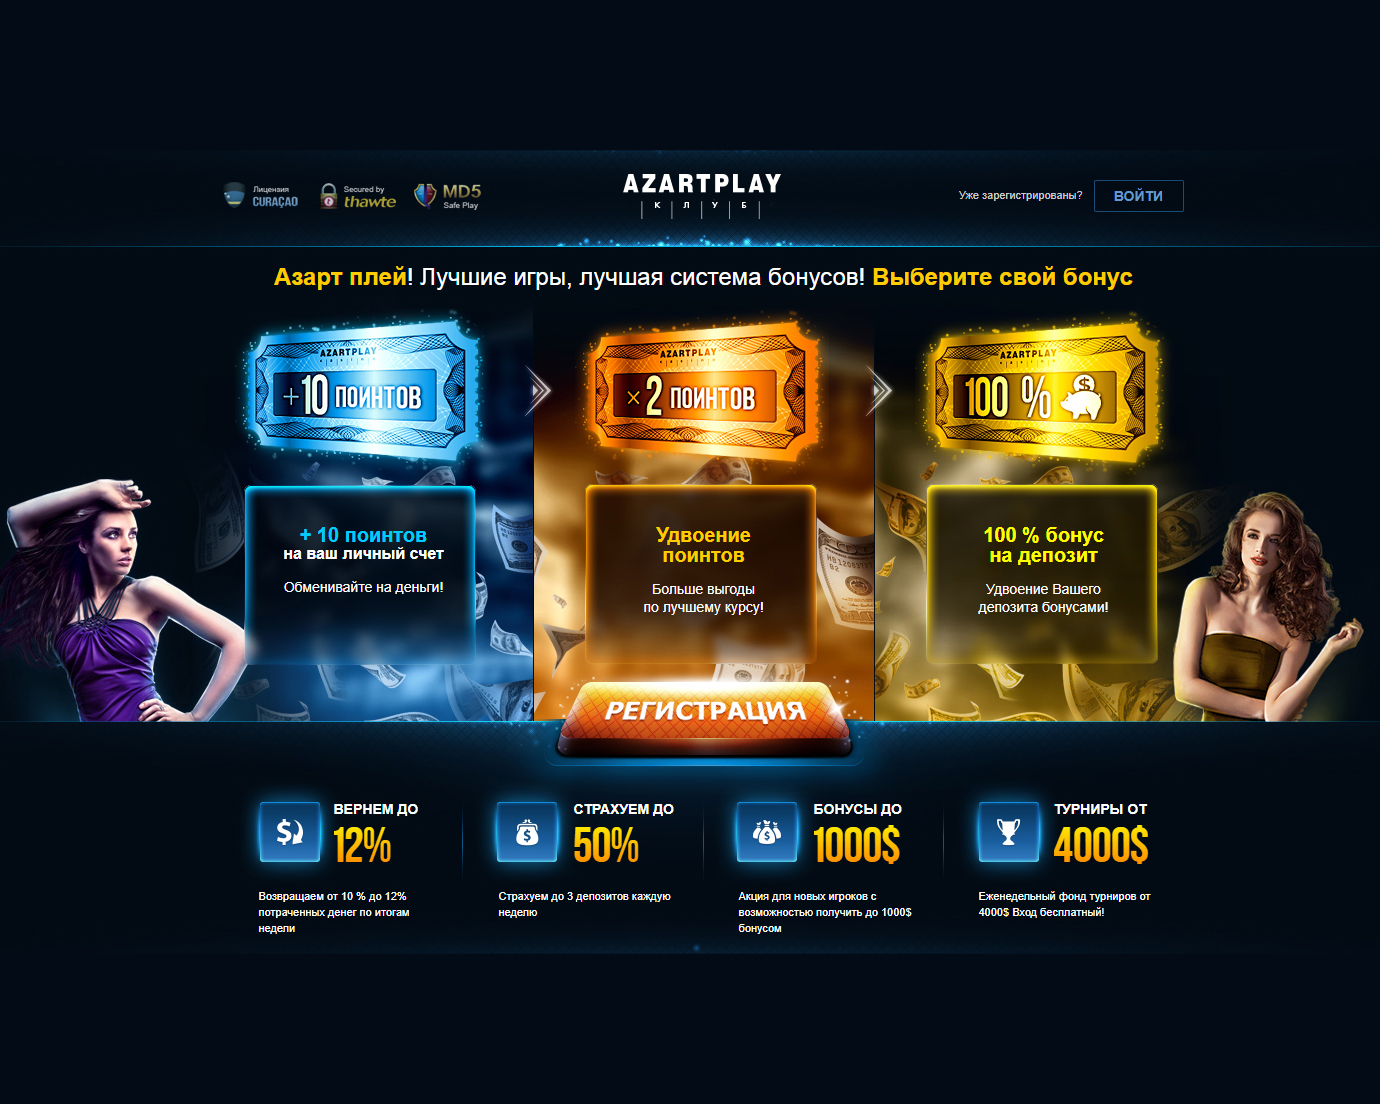 Казино онлайн азарт плей мобильная версия зеркало как вывести деньги из казино вулкан на яндекс деньги